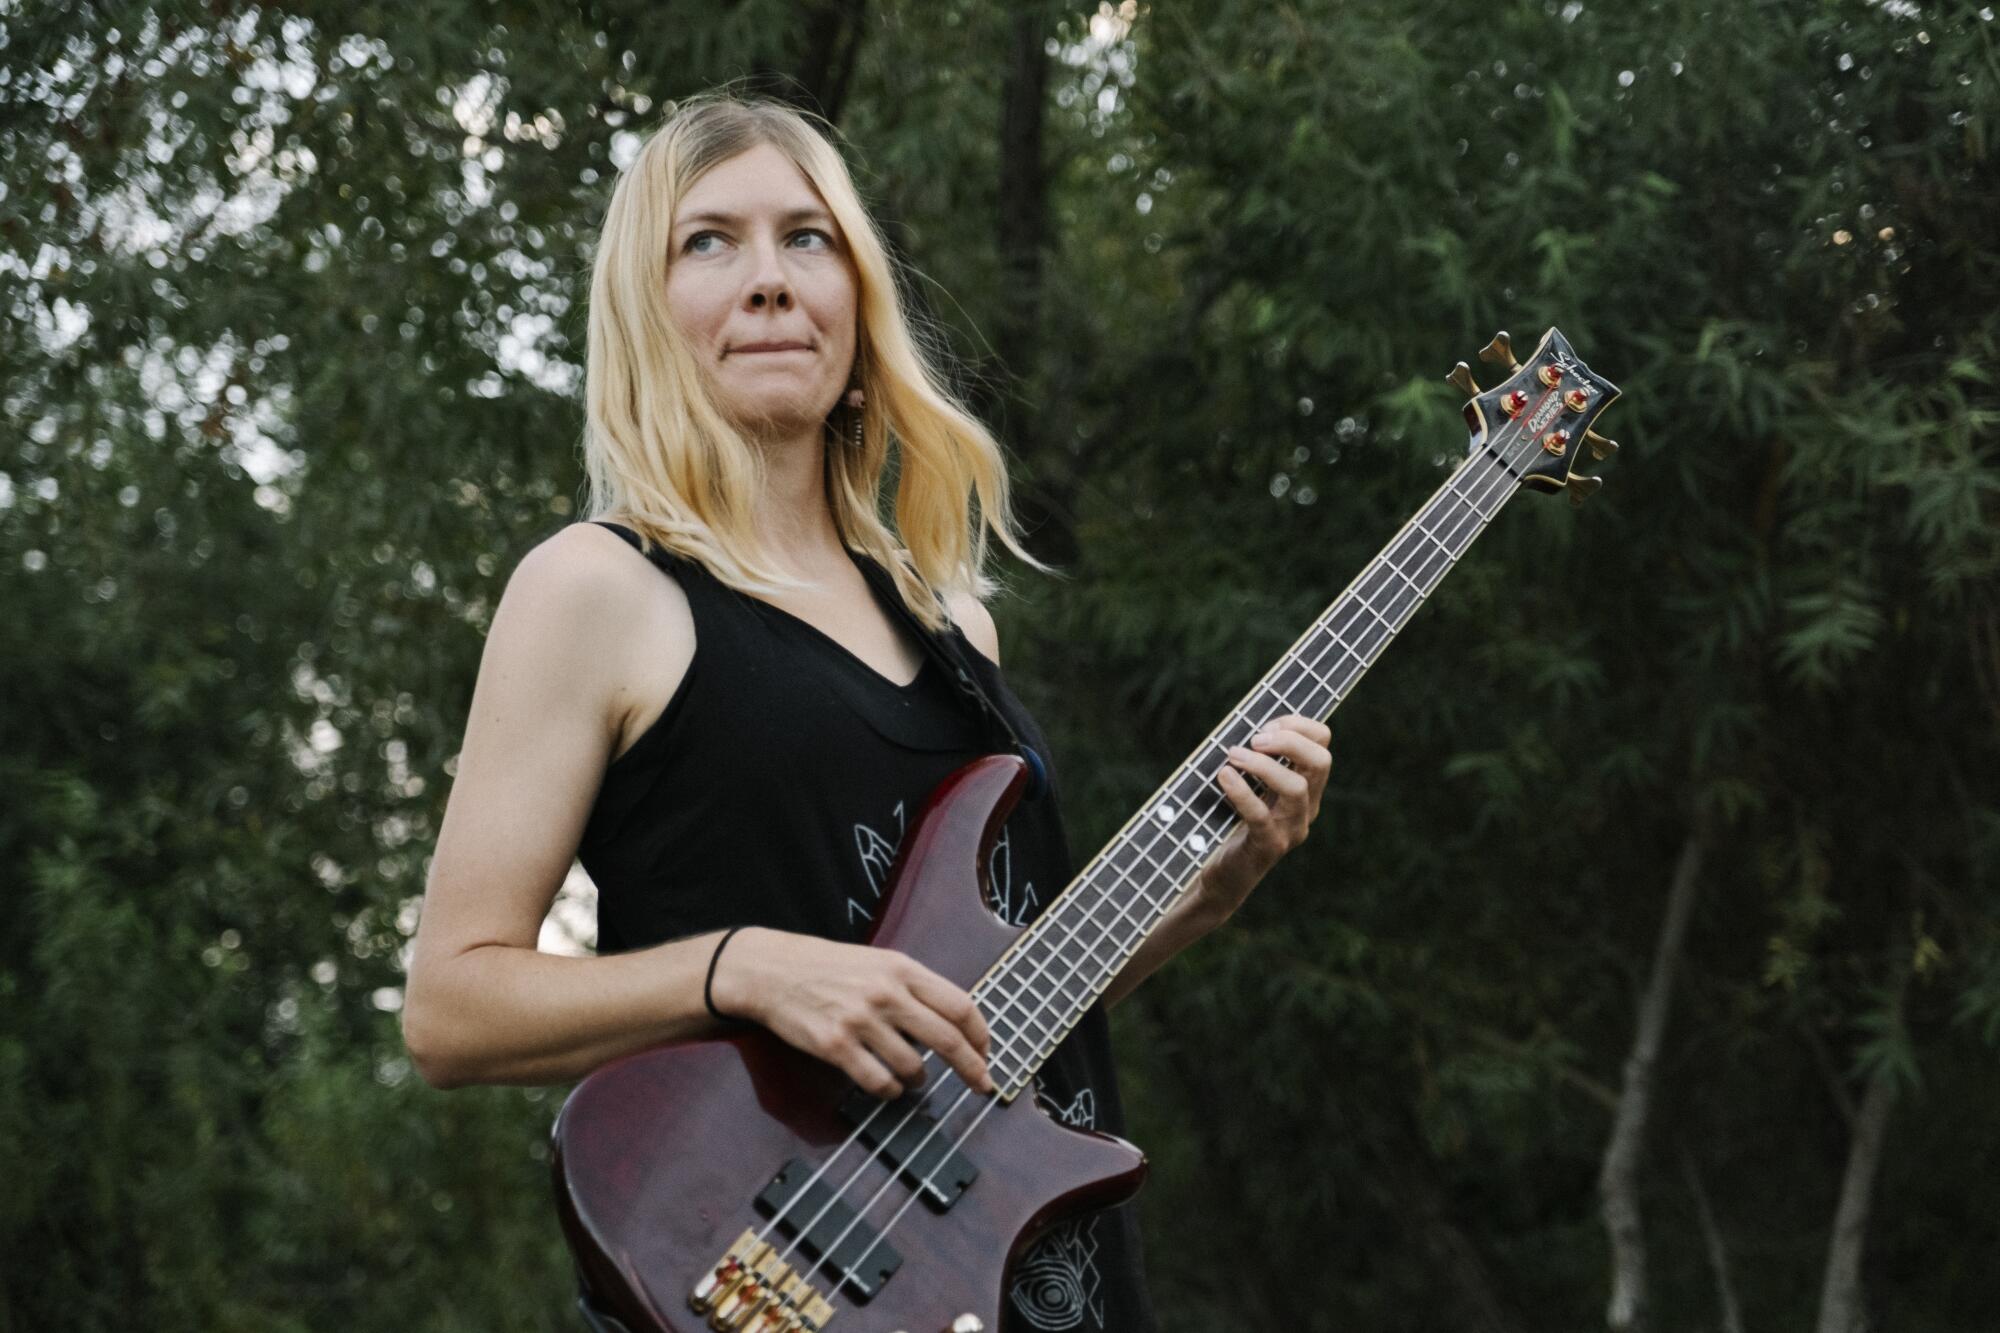 A blond woman stands outdoors holding a bass guitar.